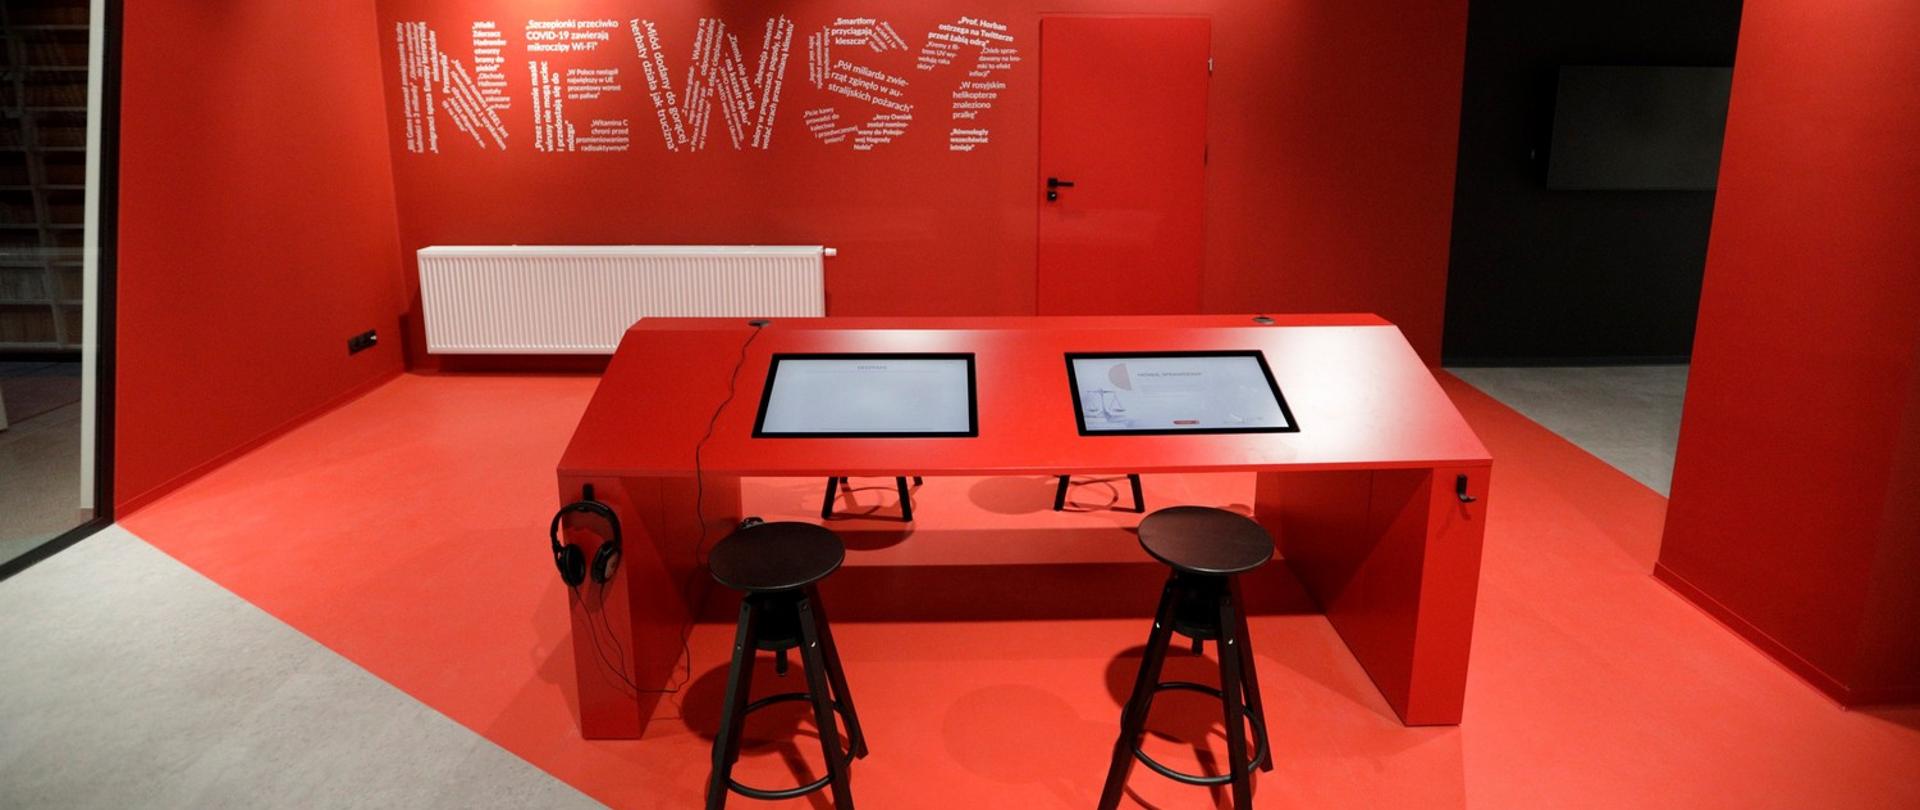 News room w centrum edukacji medialnej. Pokój z czerwonymi ścianami, pośrodku prostokątny stół cztery, wysokie taborety. W blacie stołu wbudowane dwa monitory.